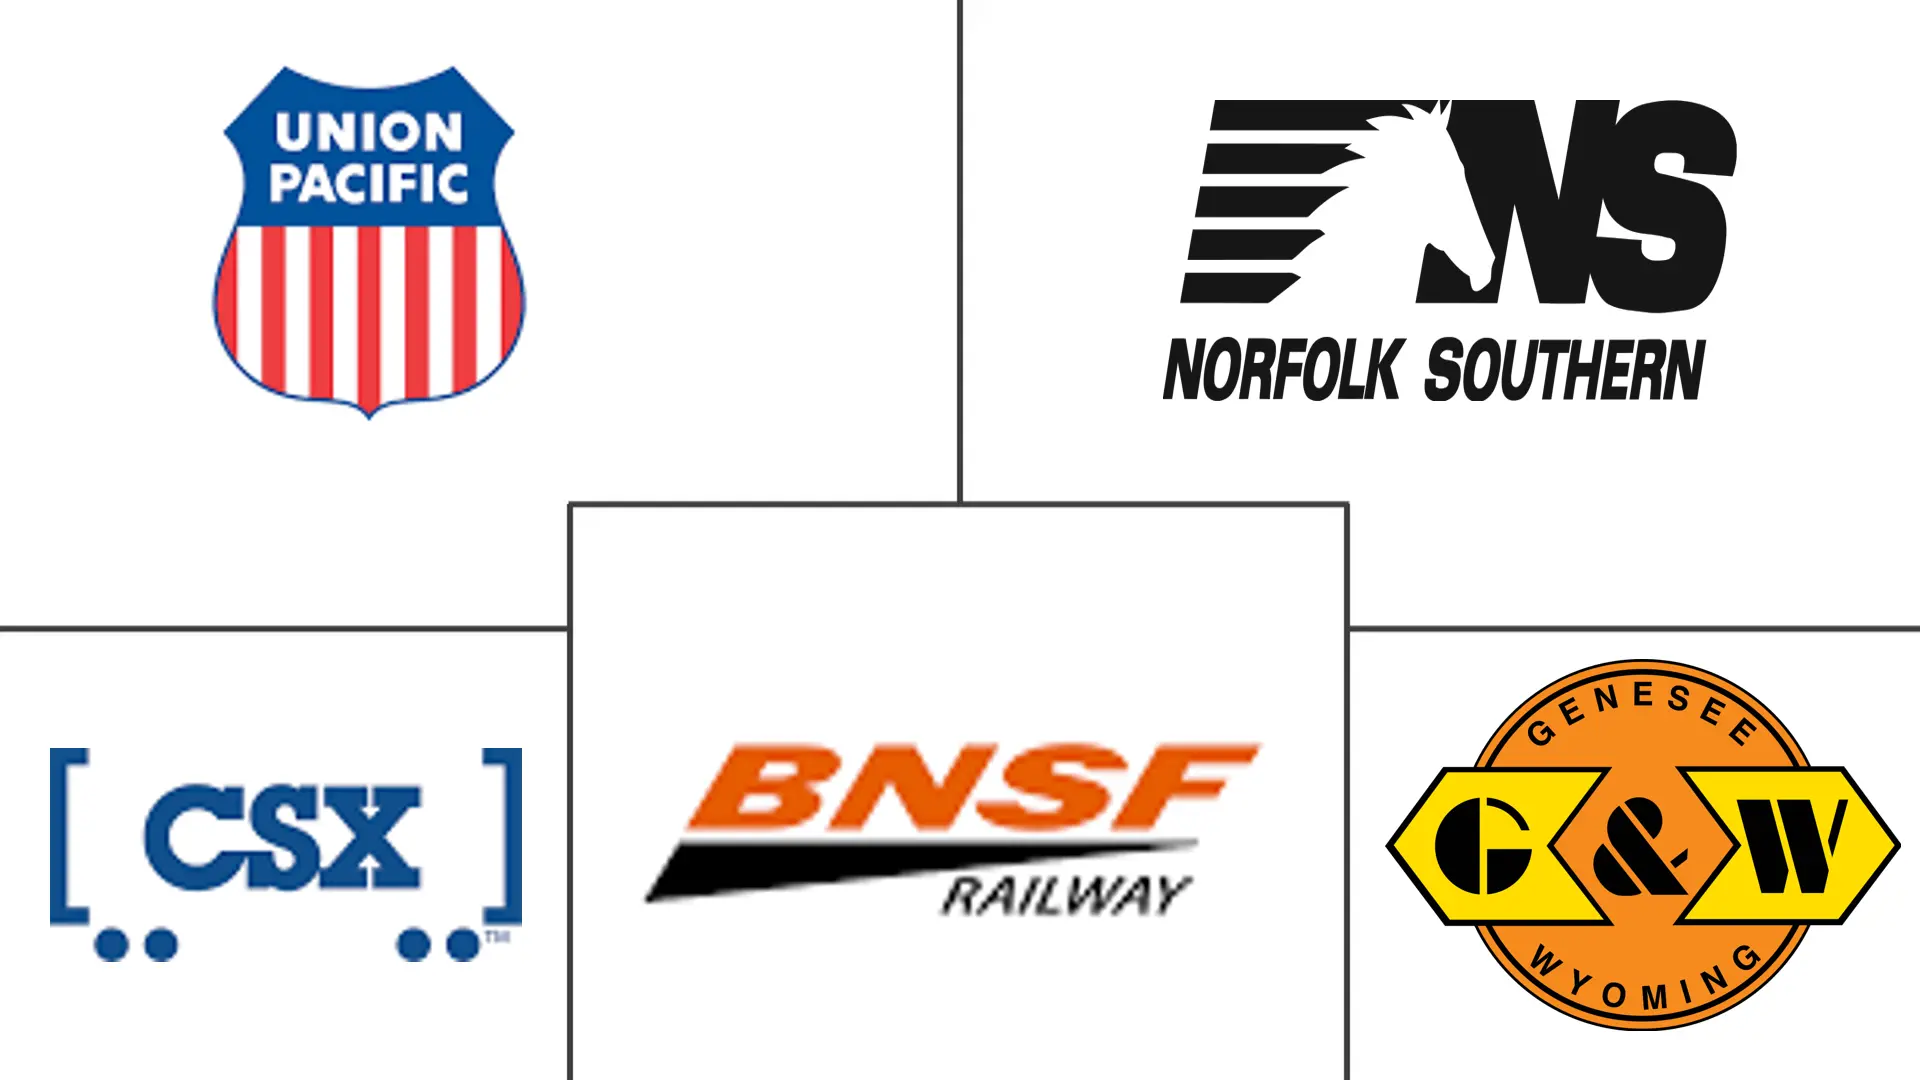 米国の鉄道貨物輸送市場の主要企業